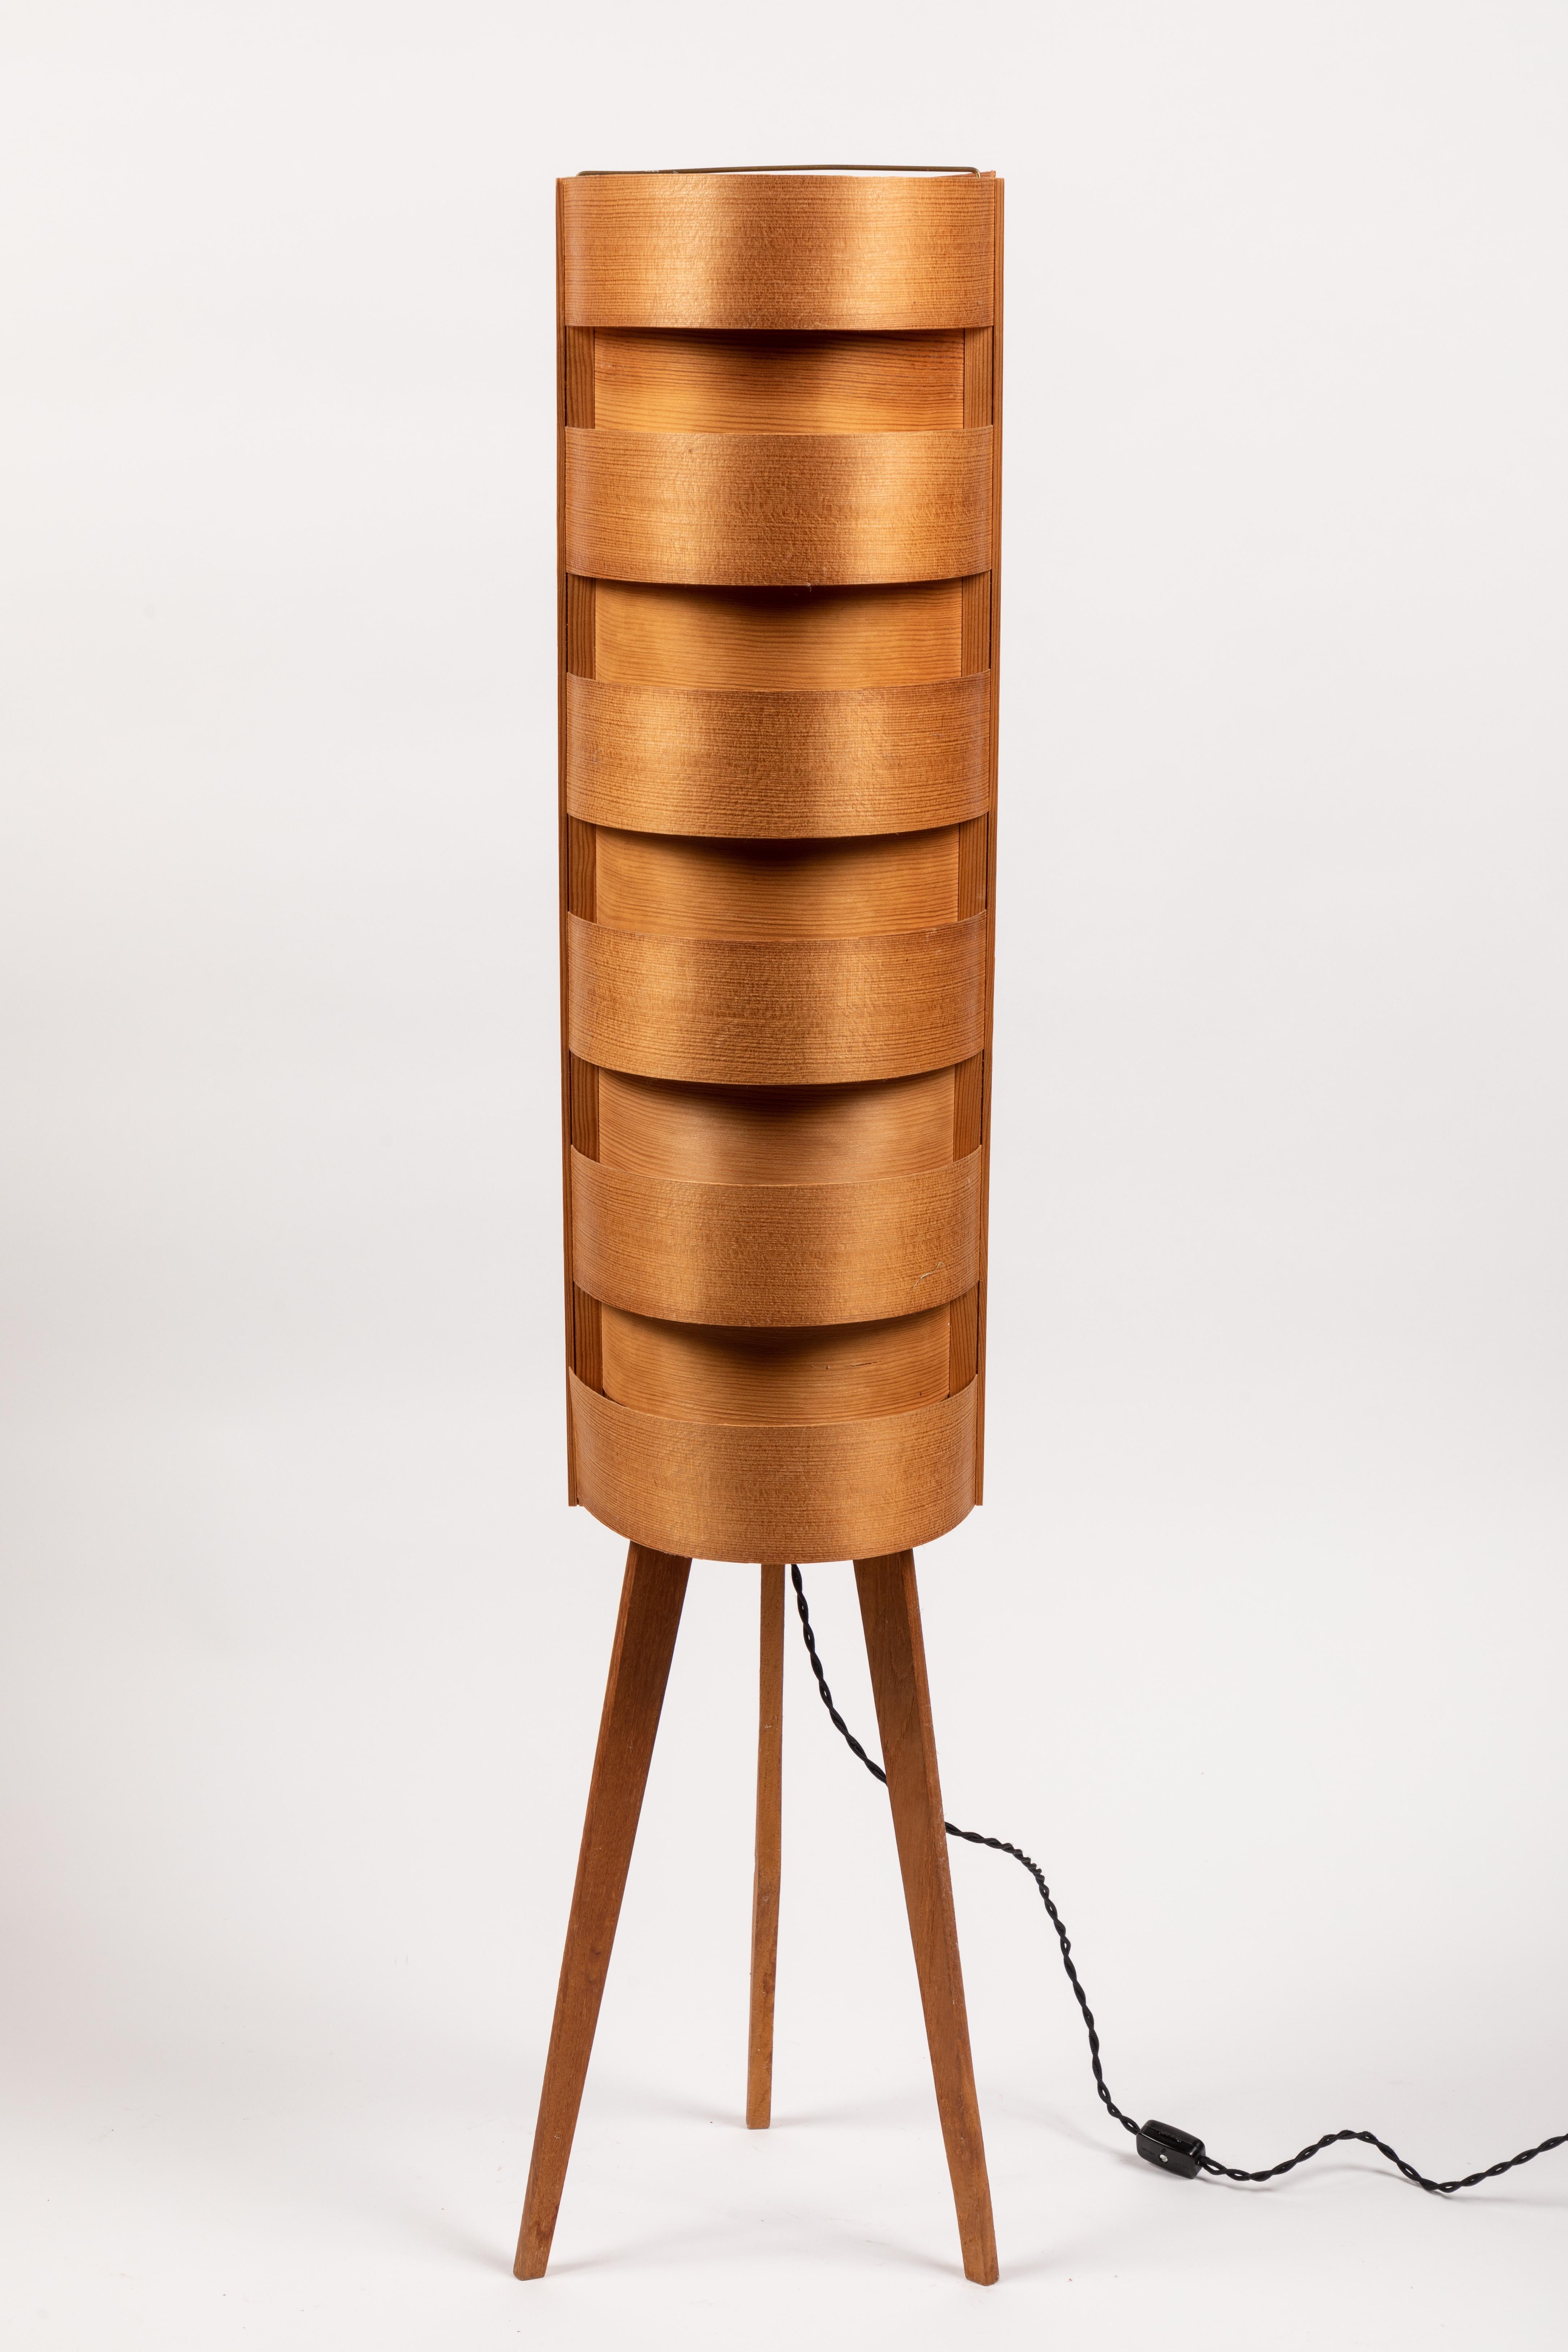 1960s Hans-Agne Jakobsson Wood Tripod Floor Lamp for AB Ellysett For Sale 4